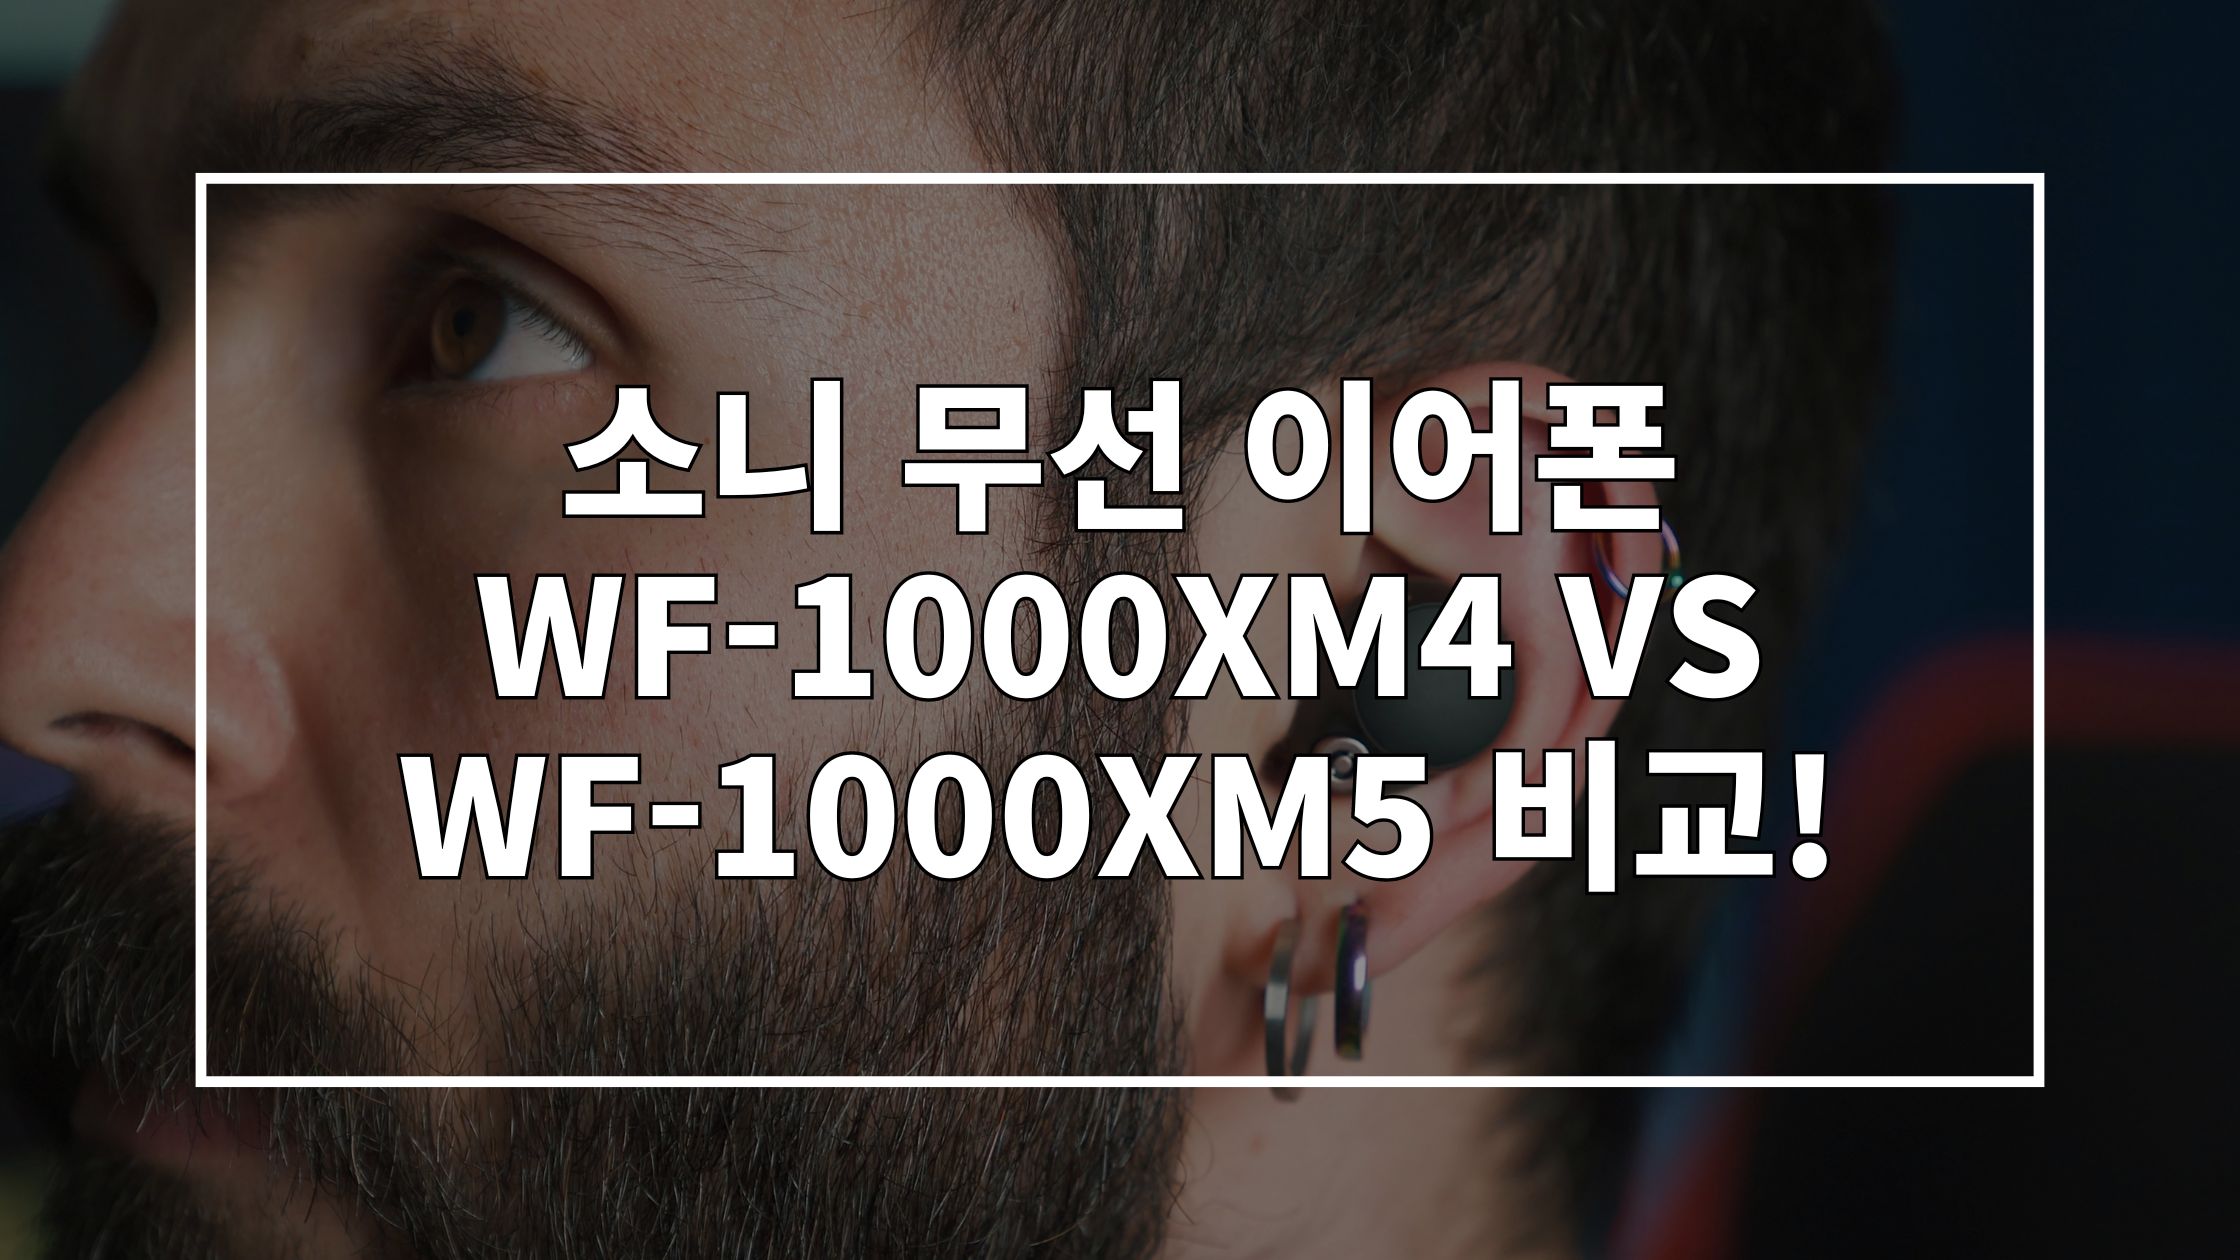 소니 무선 이어폰을 착용하고 있는 사람의 귀를 촬영한 사진 위에 '소니 무선 이어폰 WF-1000XM4 VS WF-1000XM5 비교!'라고 쓰인 썸네일 이미지입니다.